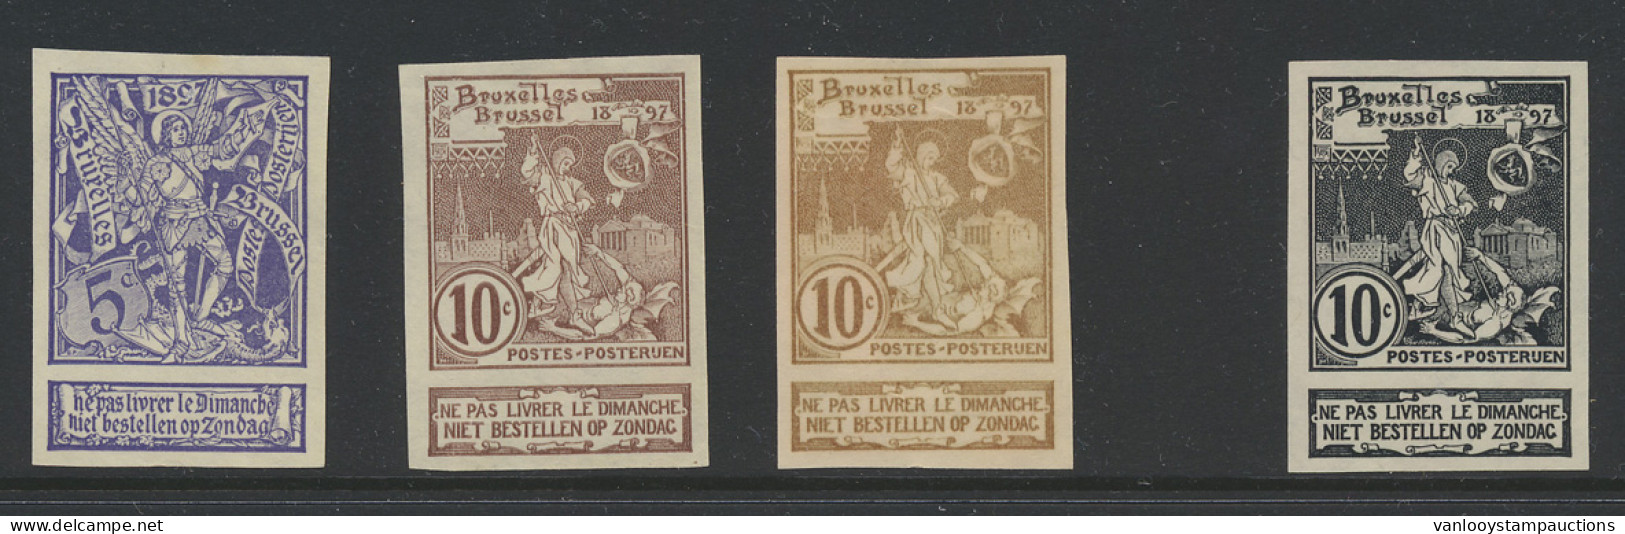 N° 71/73 Expo Brussel, De Serie Ongetand + Proefdruk 10c. In Het Zwart Op Dun Papier, Zm (OBP ++€60) - 1894-1896 Exposiciones